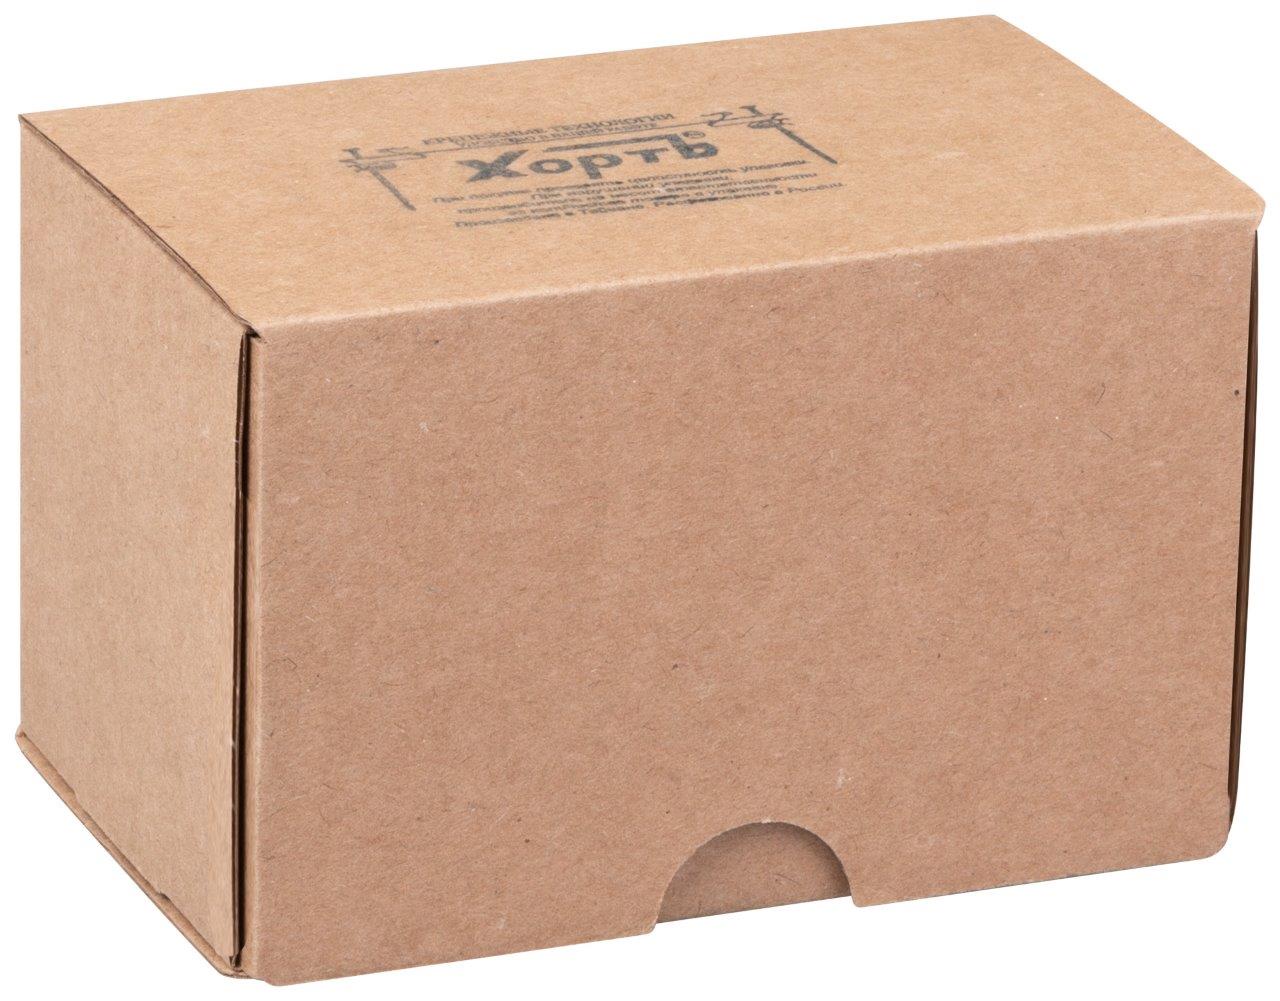 КАТЕГОРИЯ "4" "средняя" фасовка в картонные коробки по 250 шт. (или 0,25 кг)